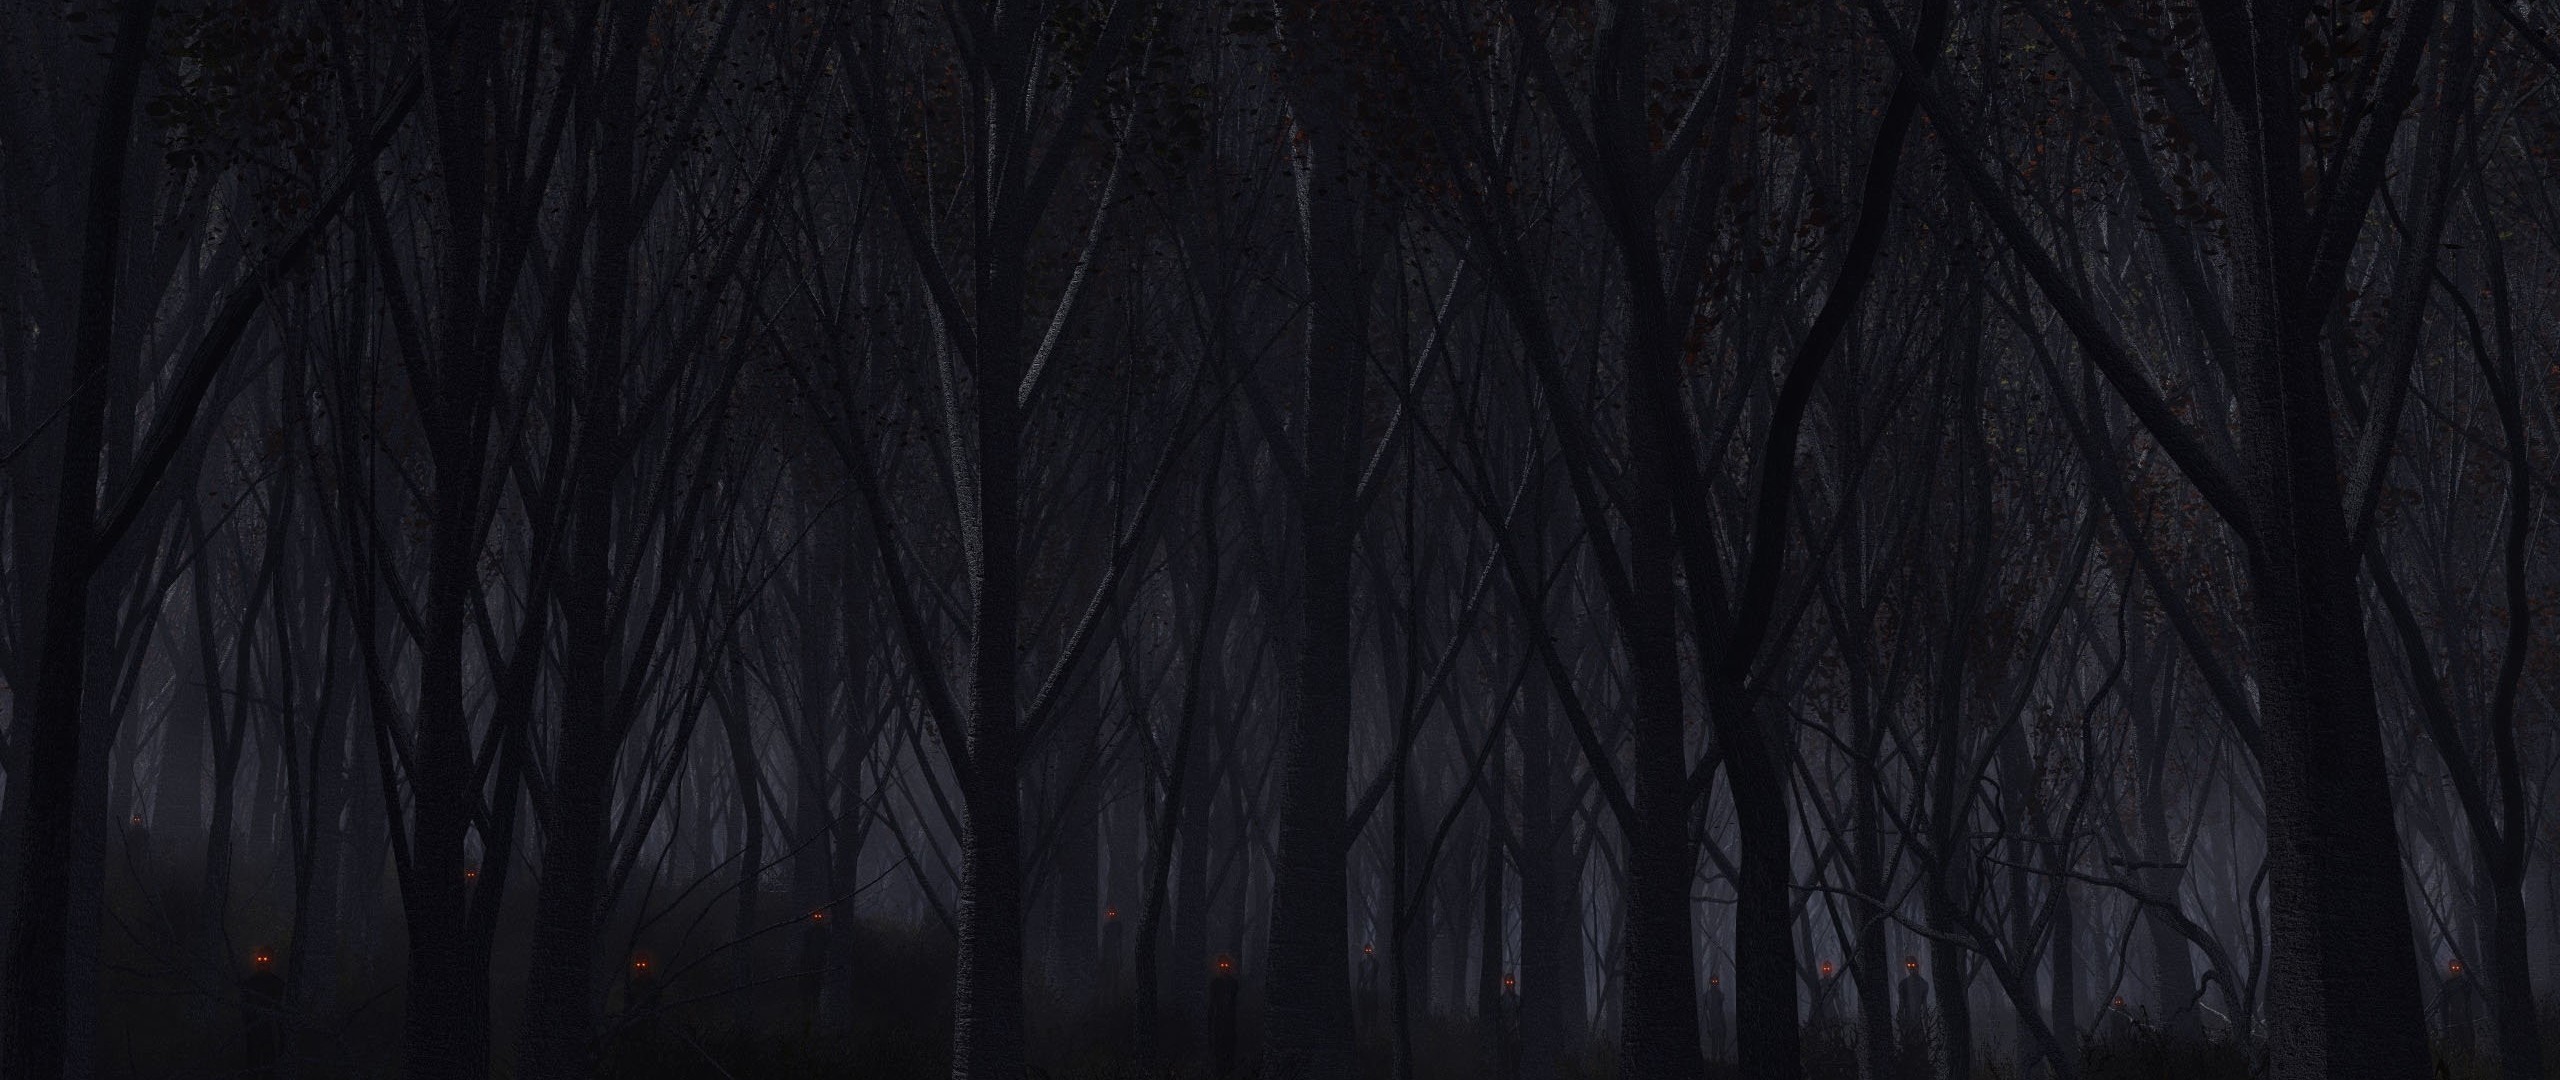 2560x1080  Wallpaper forest, trees, background, dark